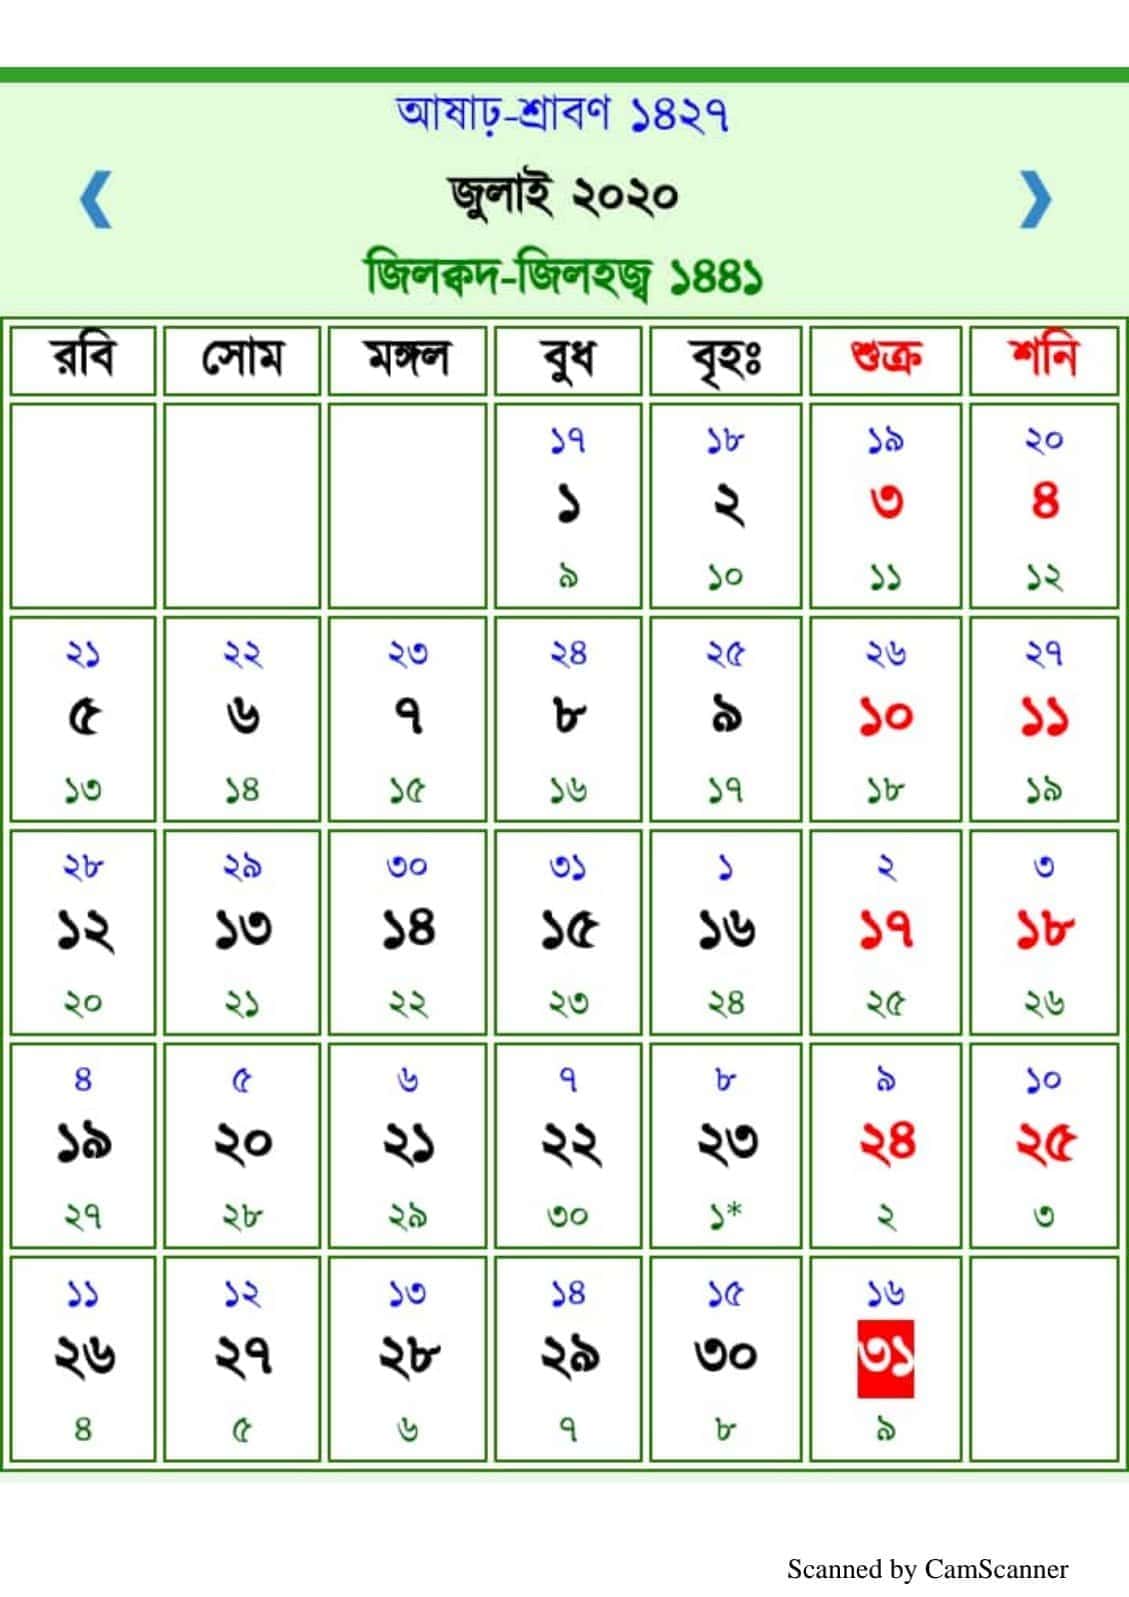 Bangla calendar 2020 -বাংলা ক্যালেন্ডার 2020-  arbi calender 2020-আরবি ক্যালেন্ডার ২০২০ | আজকের আরবি,বাংলা,ইংরেজি তারিখ  